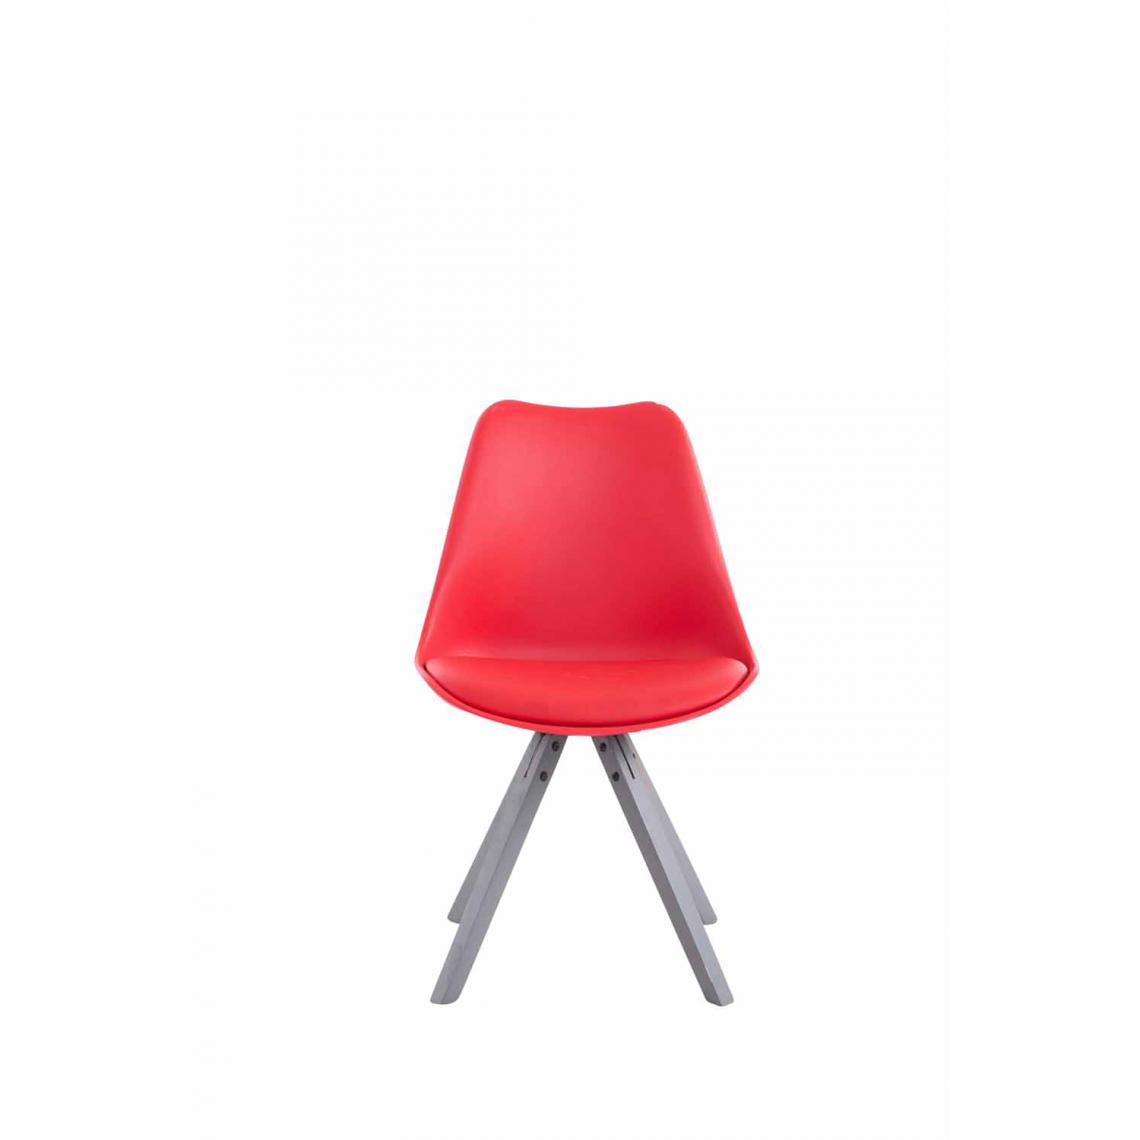 Icaverne - Magnifique Chaise visiteur collection Katmandou cuir synthétique Carré gris couleur rouge - Chaises